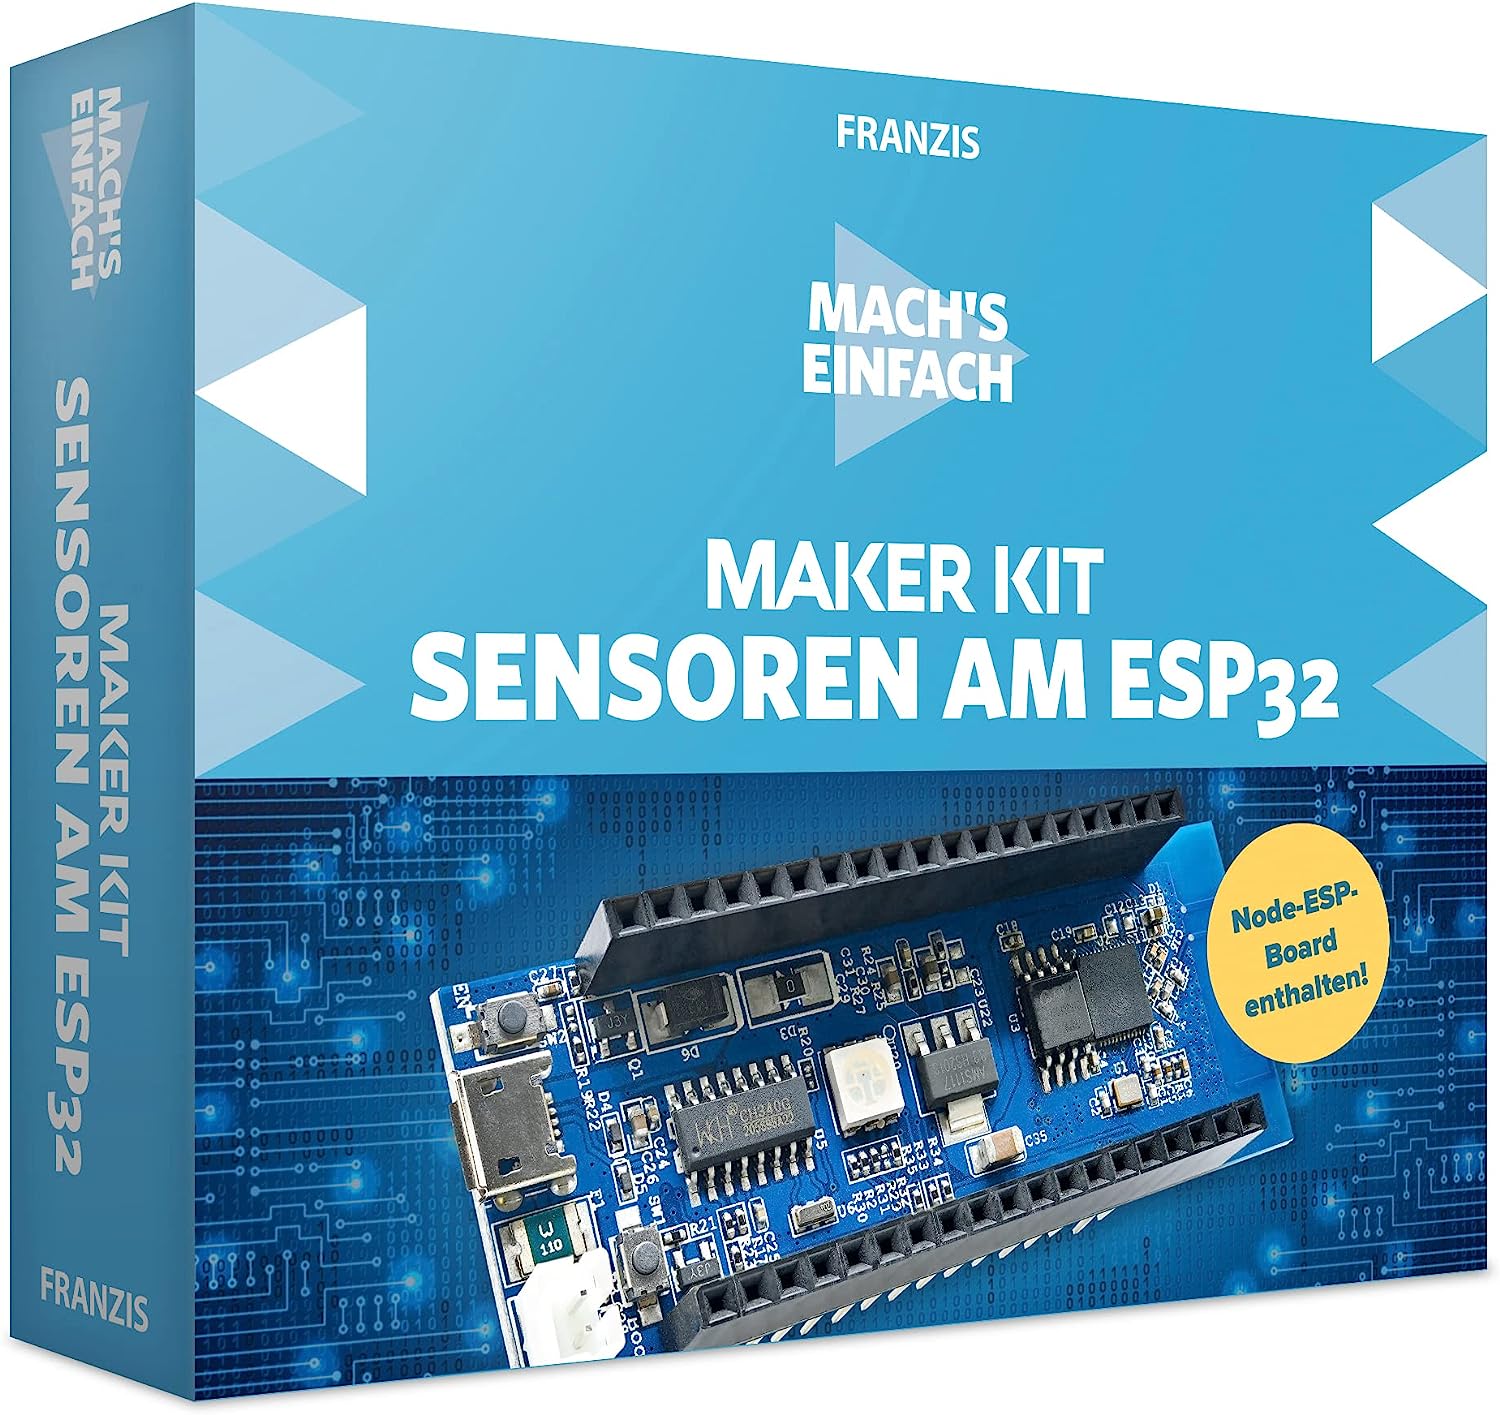 Bild zu Franzis Mach’s einfach Maker Kit Sensoren am ESP32 (67179) für 34,95€ (Vergleich: 79,93€)